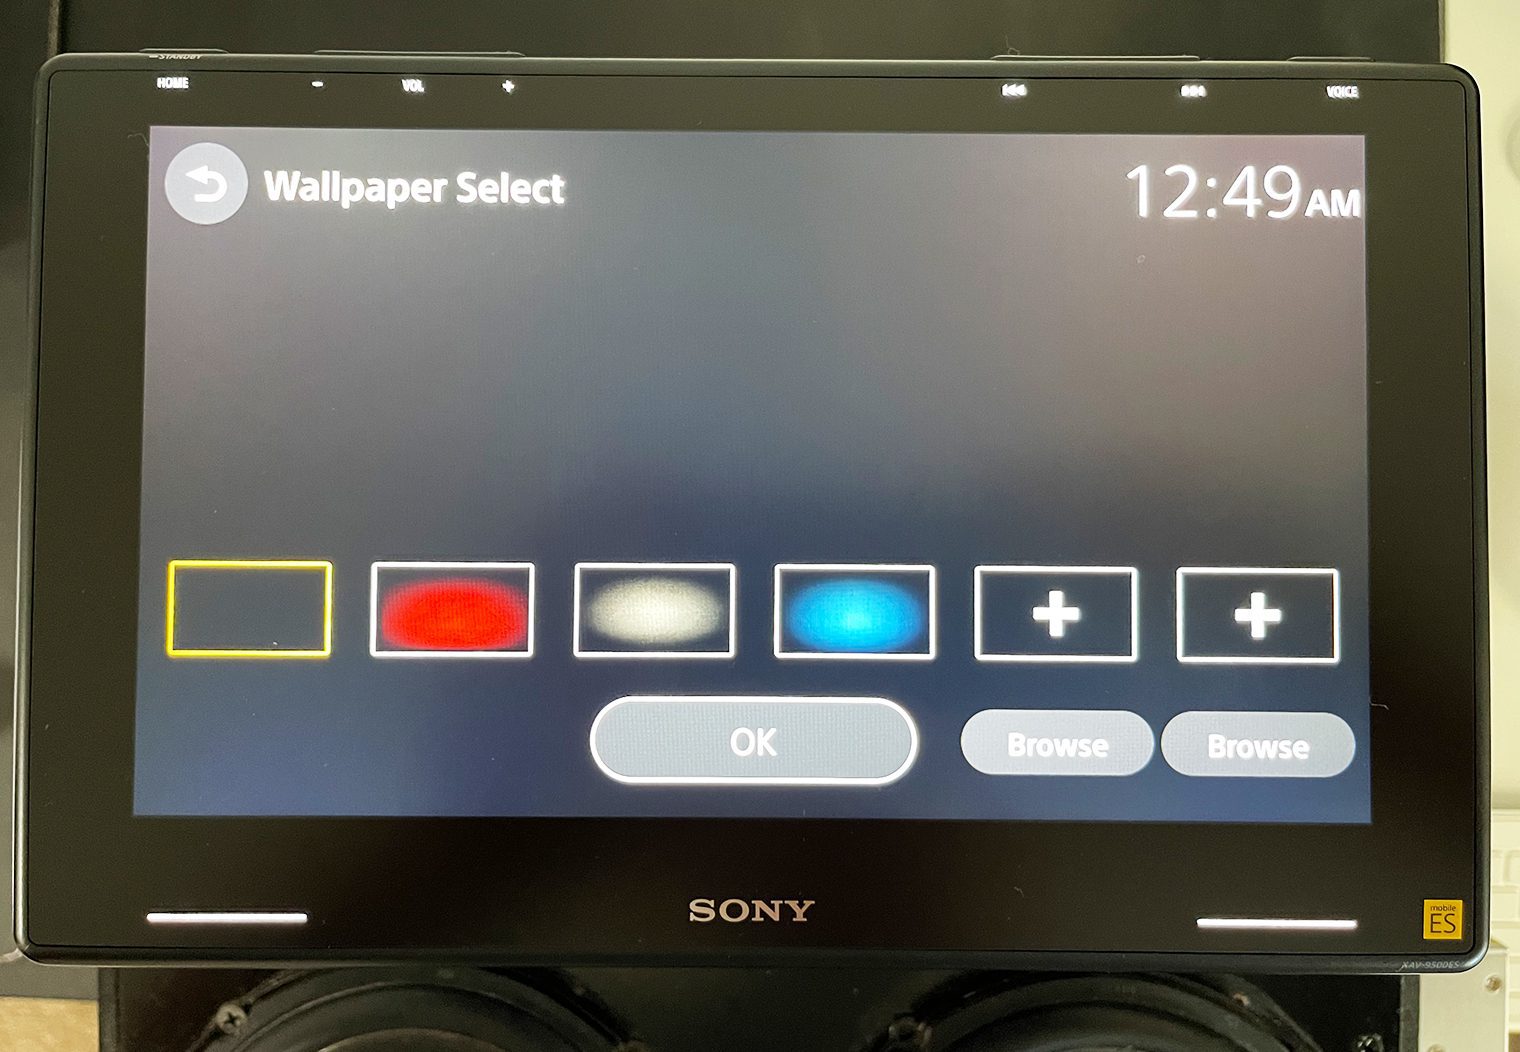 Sony XAV-9500ES wallpaper settings